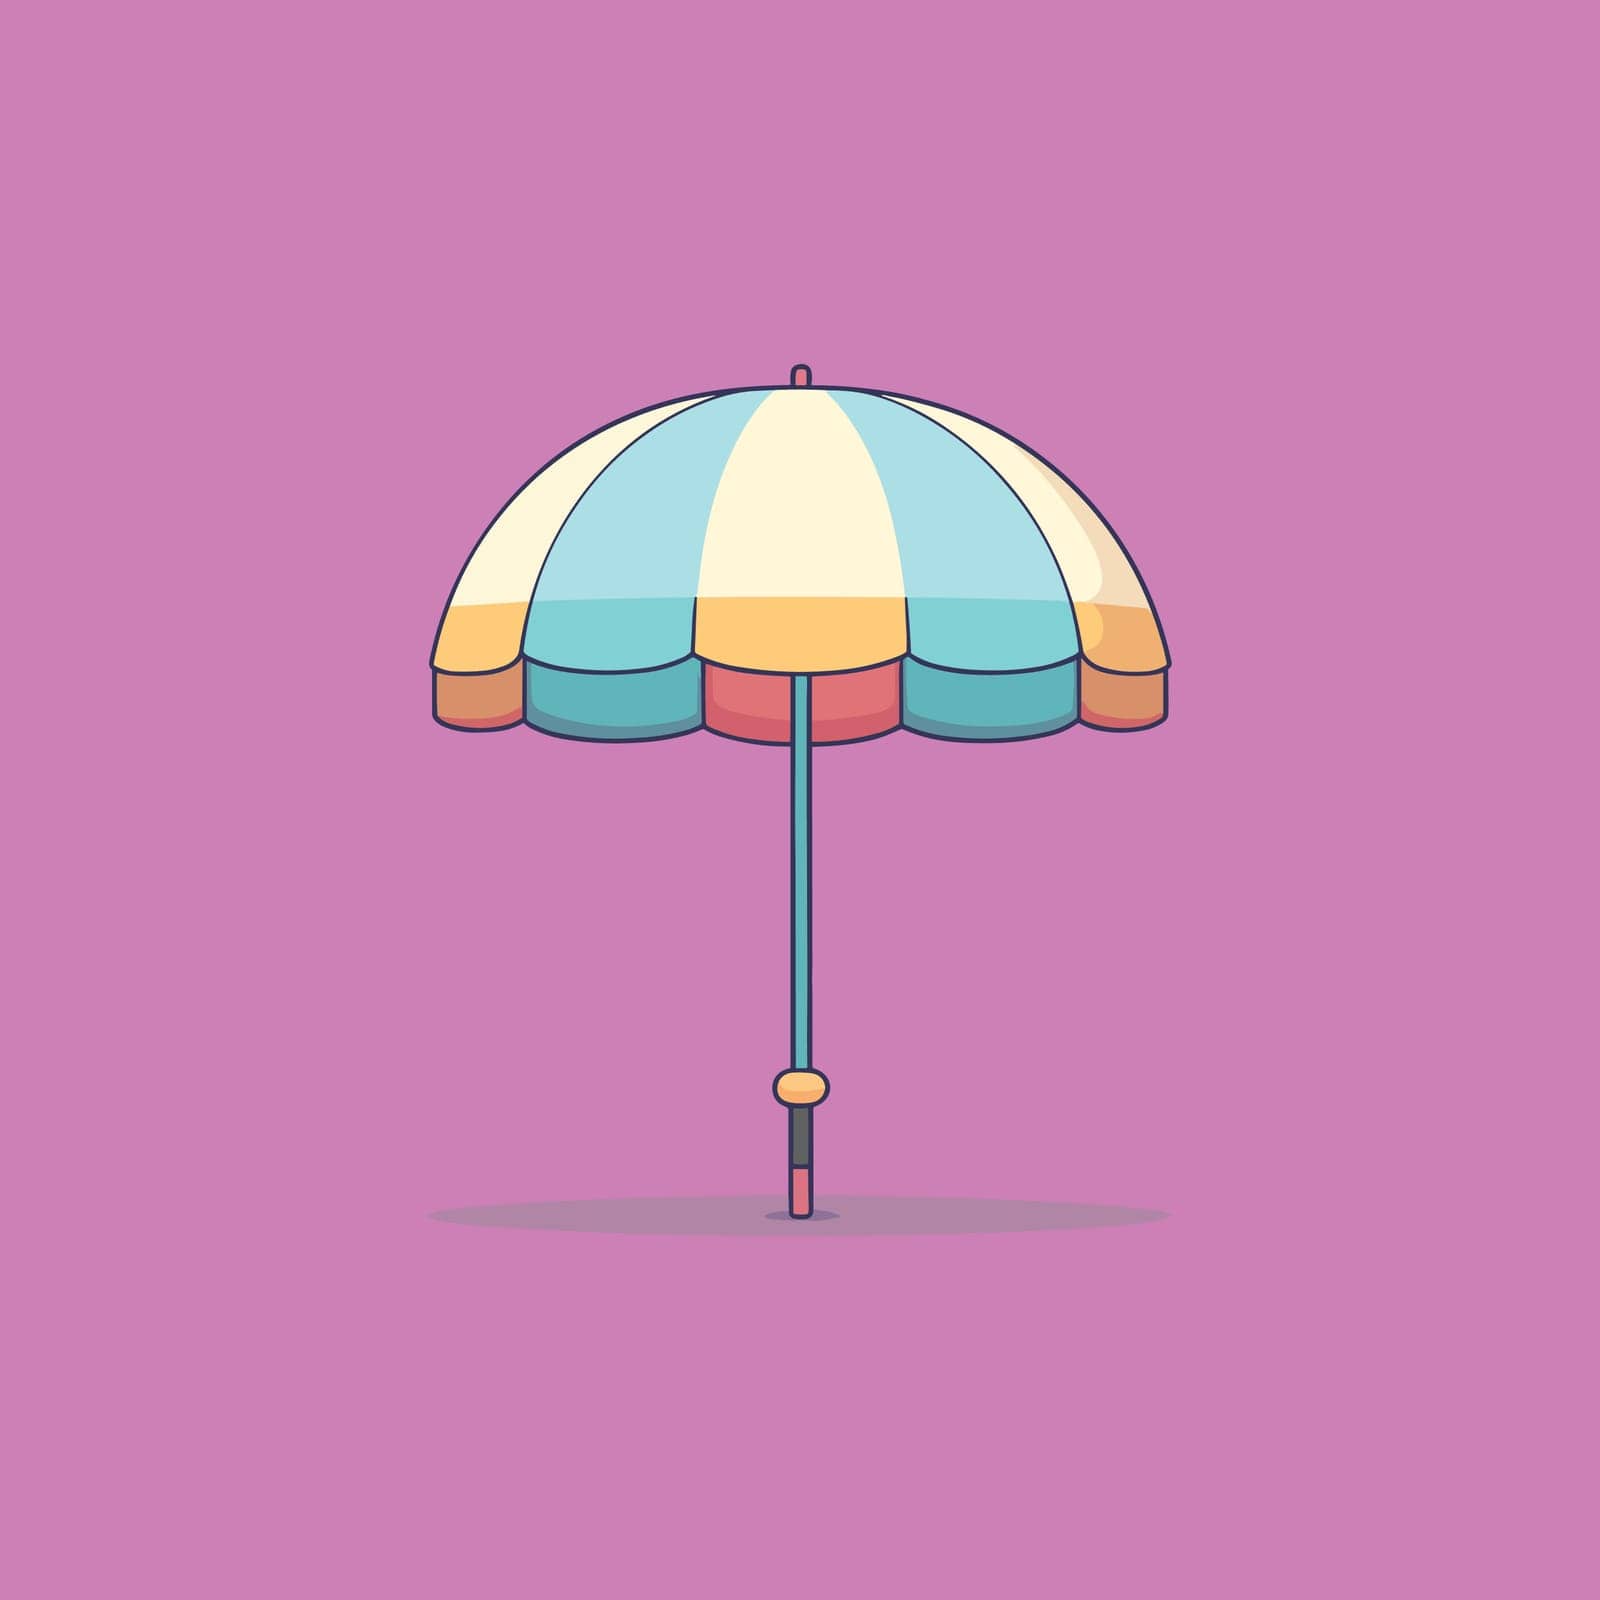 Cute umbrella kawaii character vector by Vinhsino